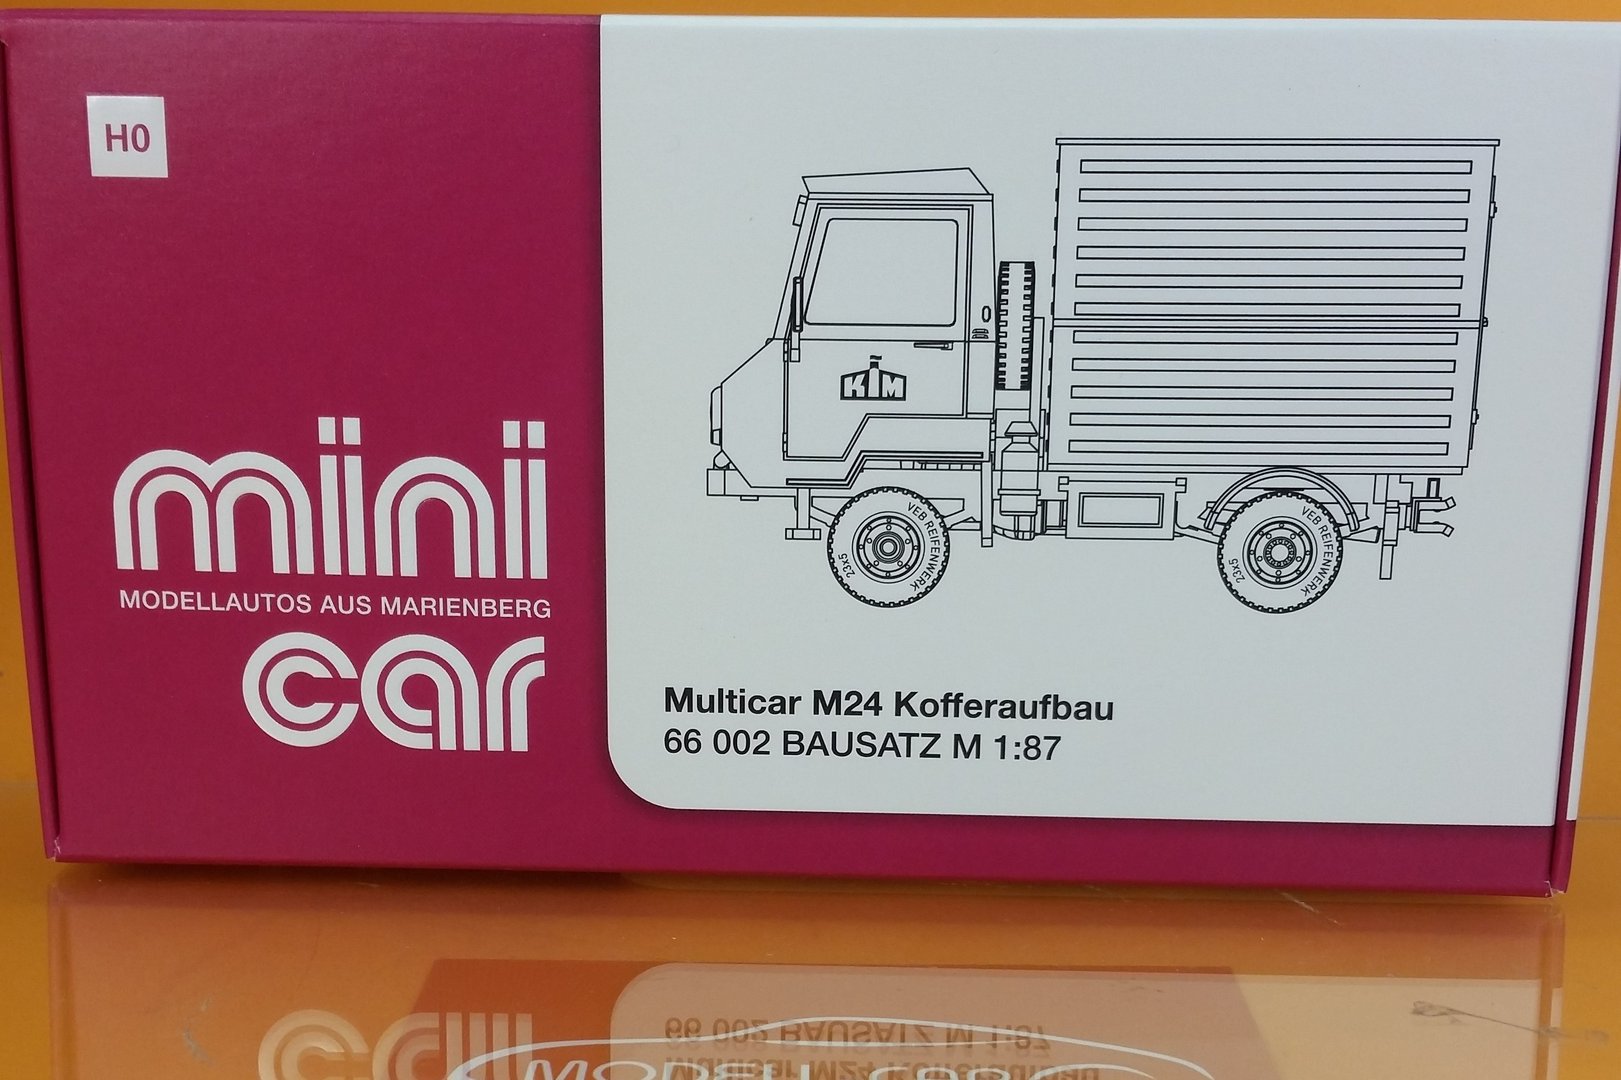 Auhagen MiniCar Multicar M24 Kofferaufbau Bausatz 66002